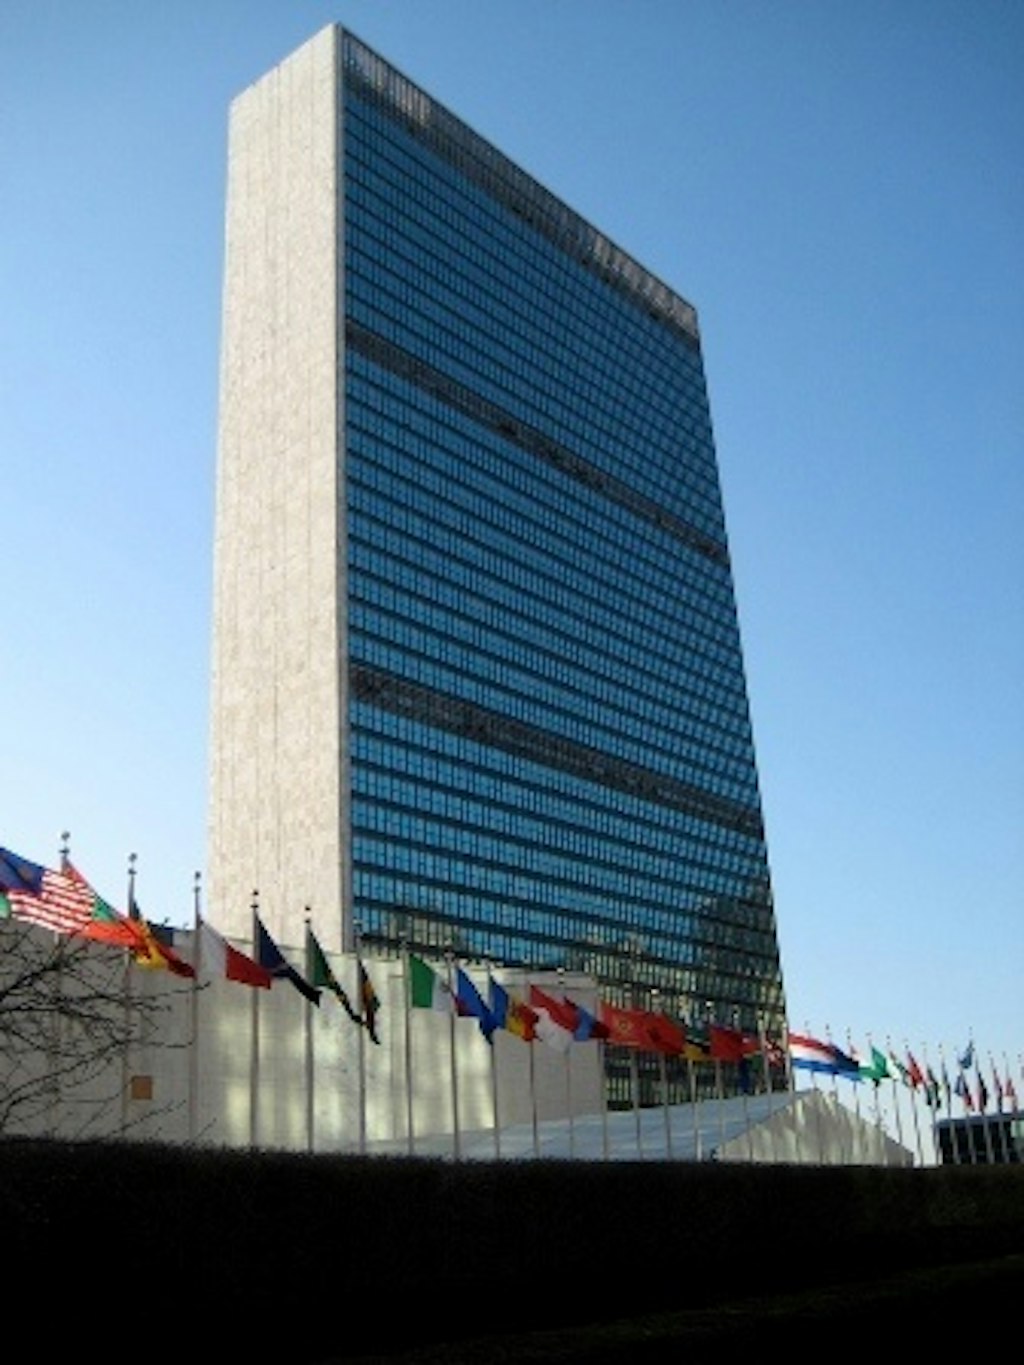 Le Canada joue un rôle central dans la résolution de l’ONU condamnant le bilan de l’Iran en matière de droits de la personne